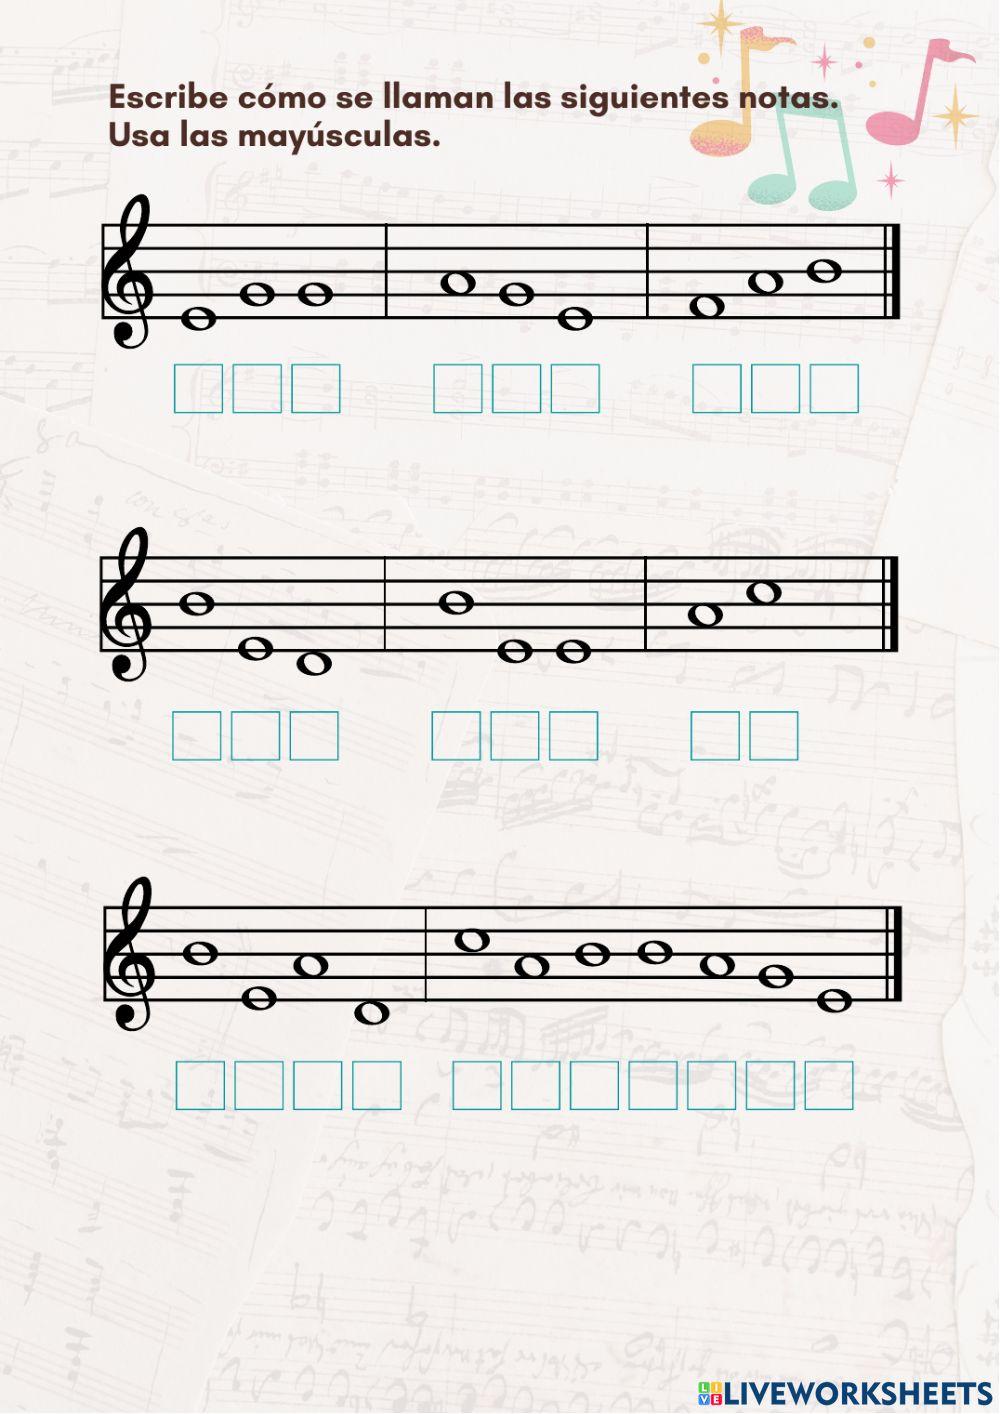 Música: notas e instrumentos